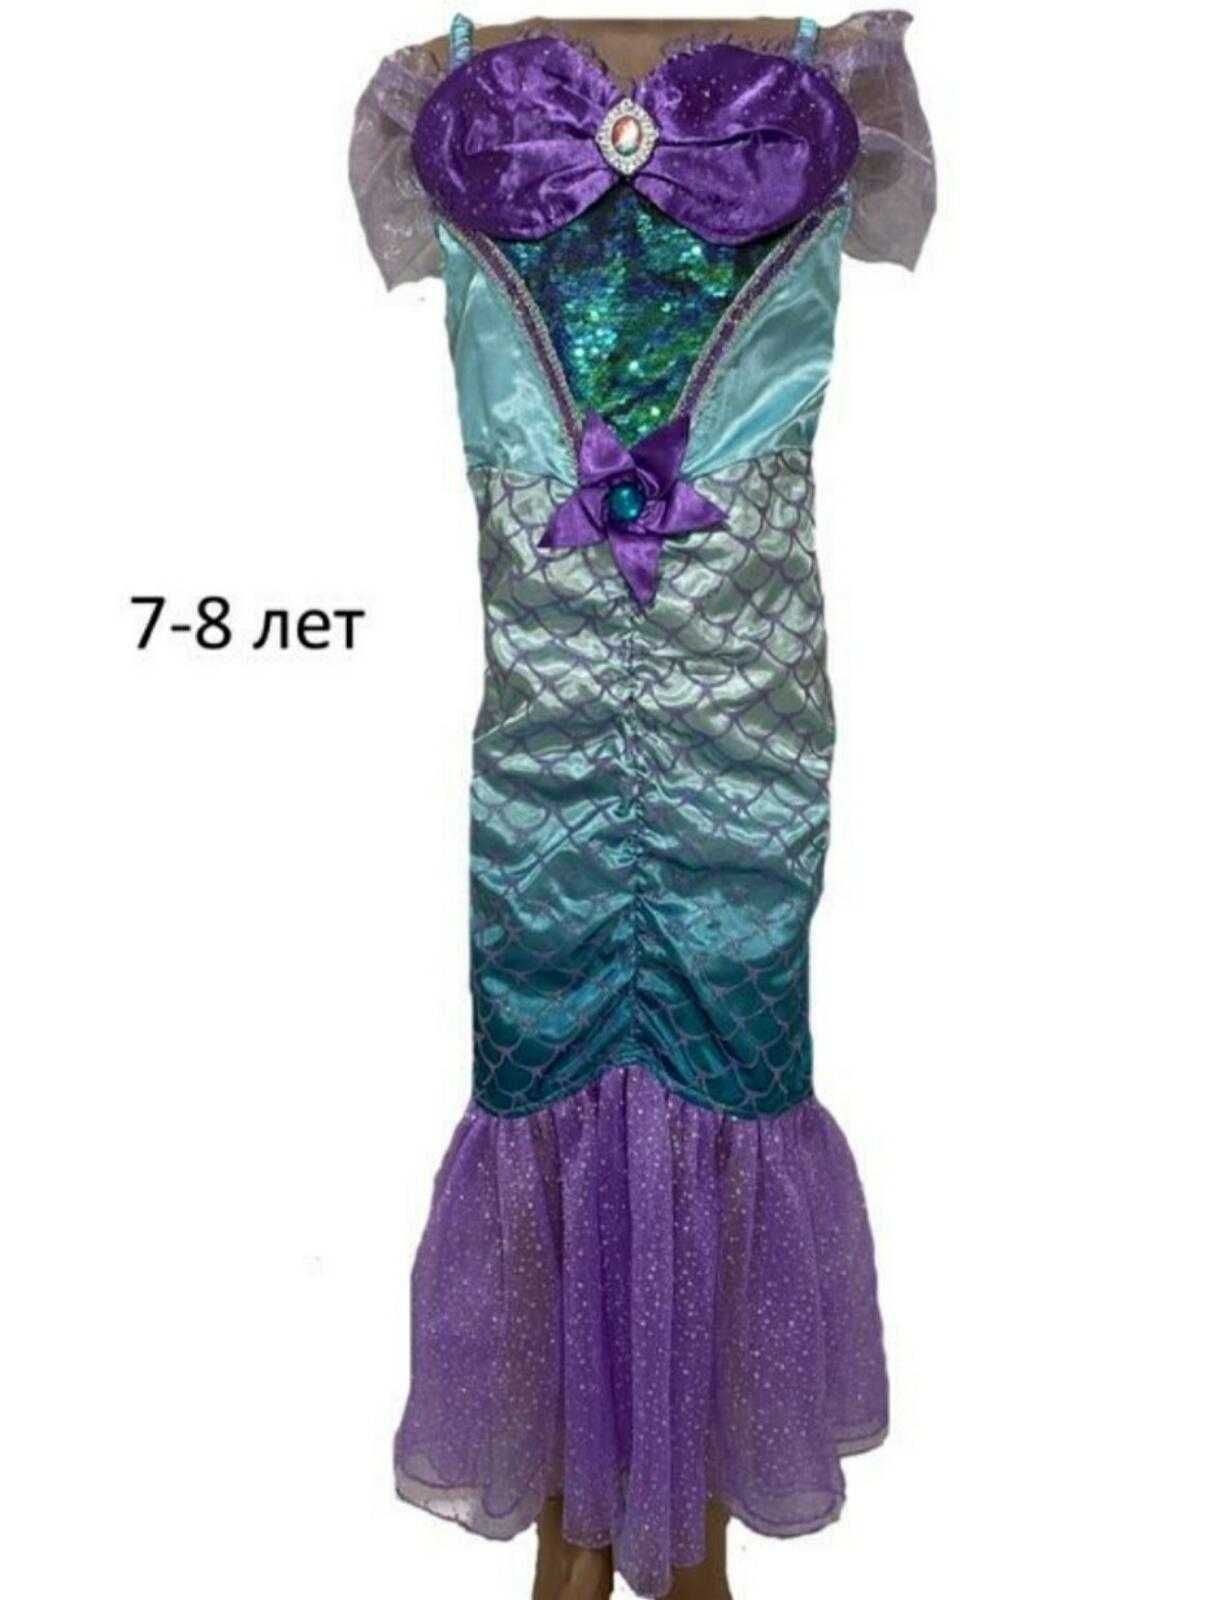 карнавальное платье русалка Ариэль 7-8 лет